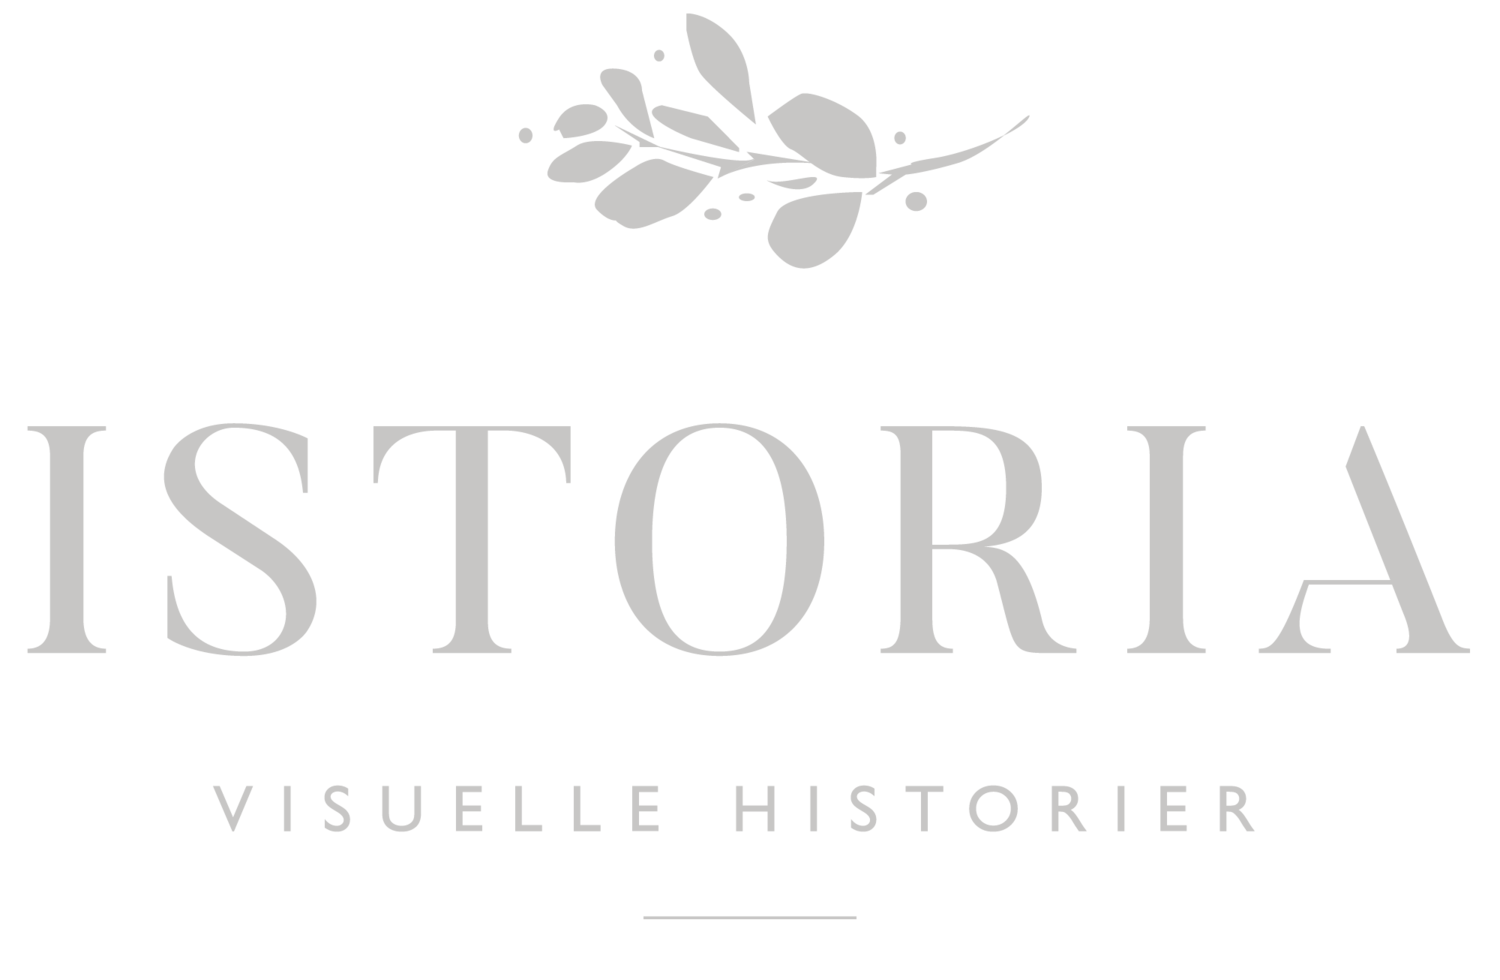 Istoria - Visuelle historier